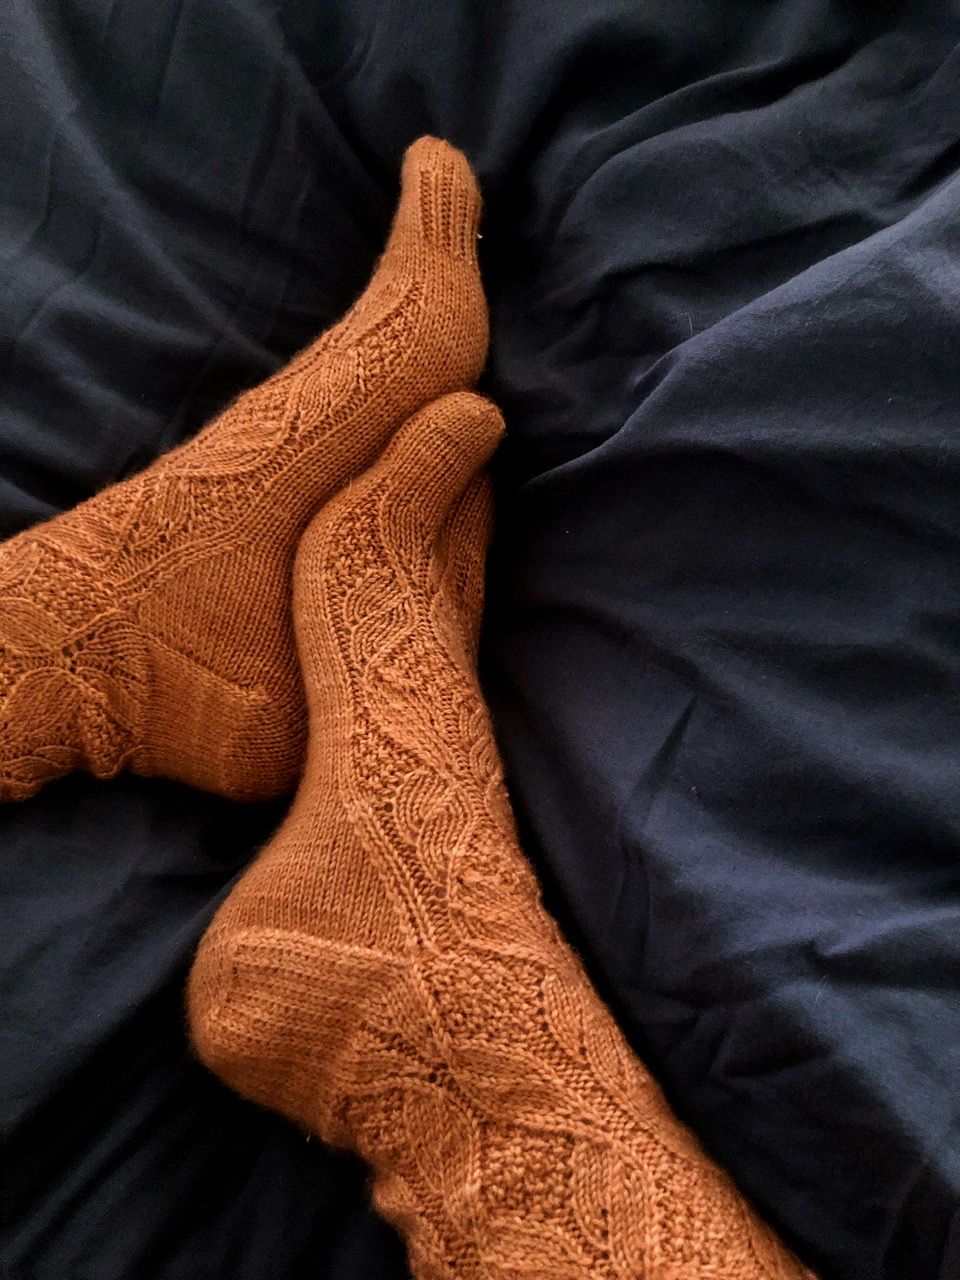 Norah Jones socks